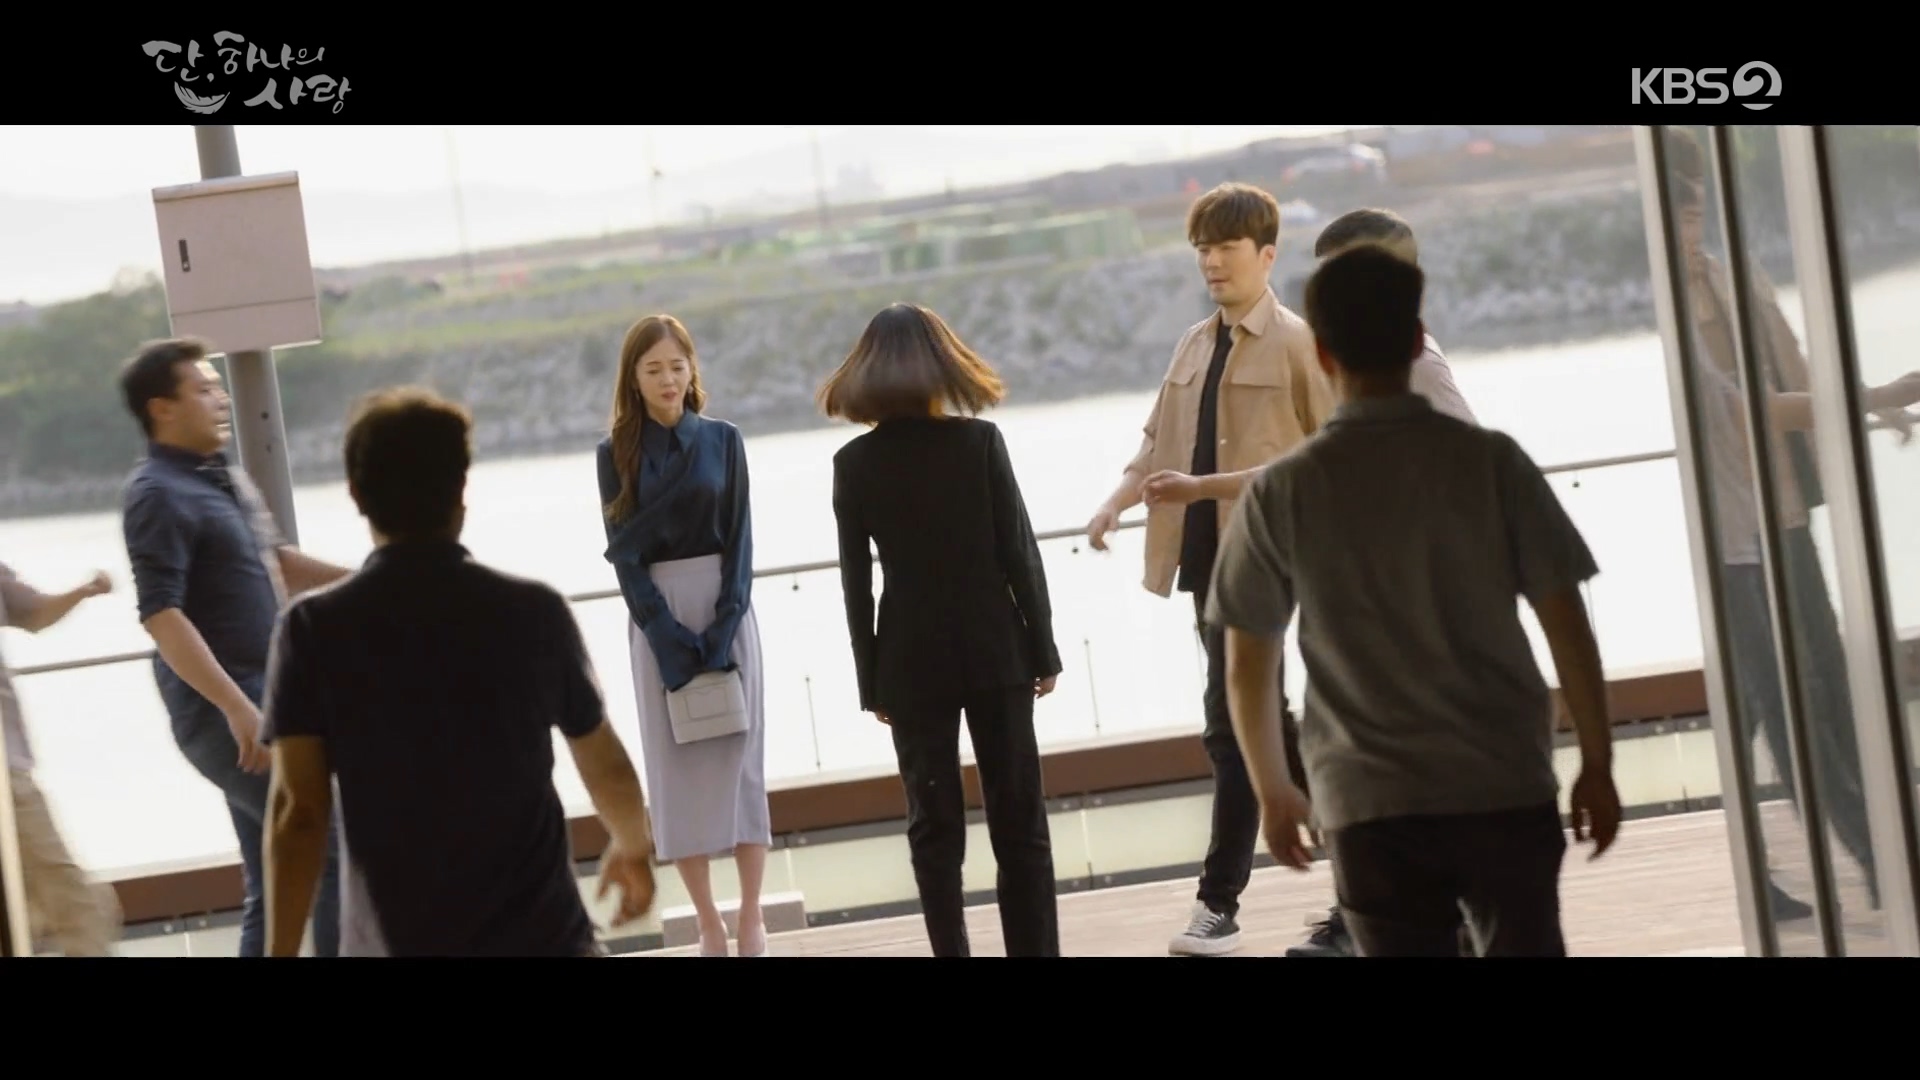 BBYB 김보미 KBS2 단 하나의 사랑 29회 착용 가방 (비비와이비 틴디백)